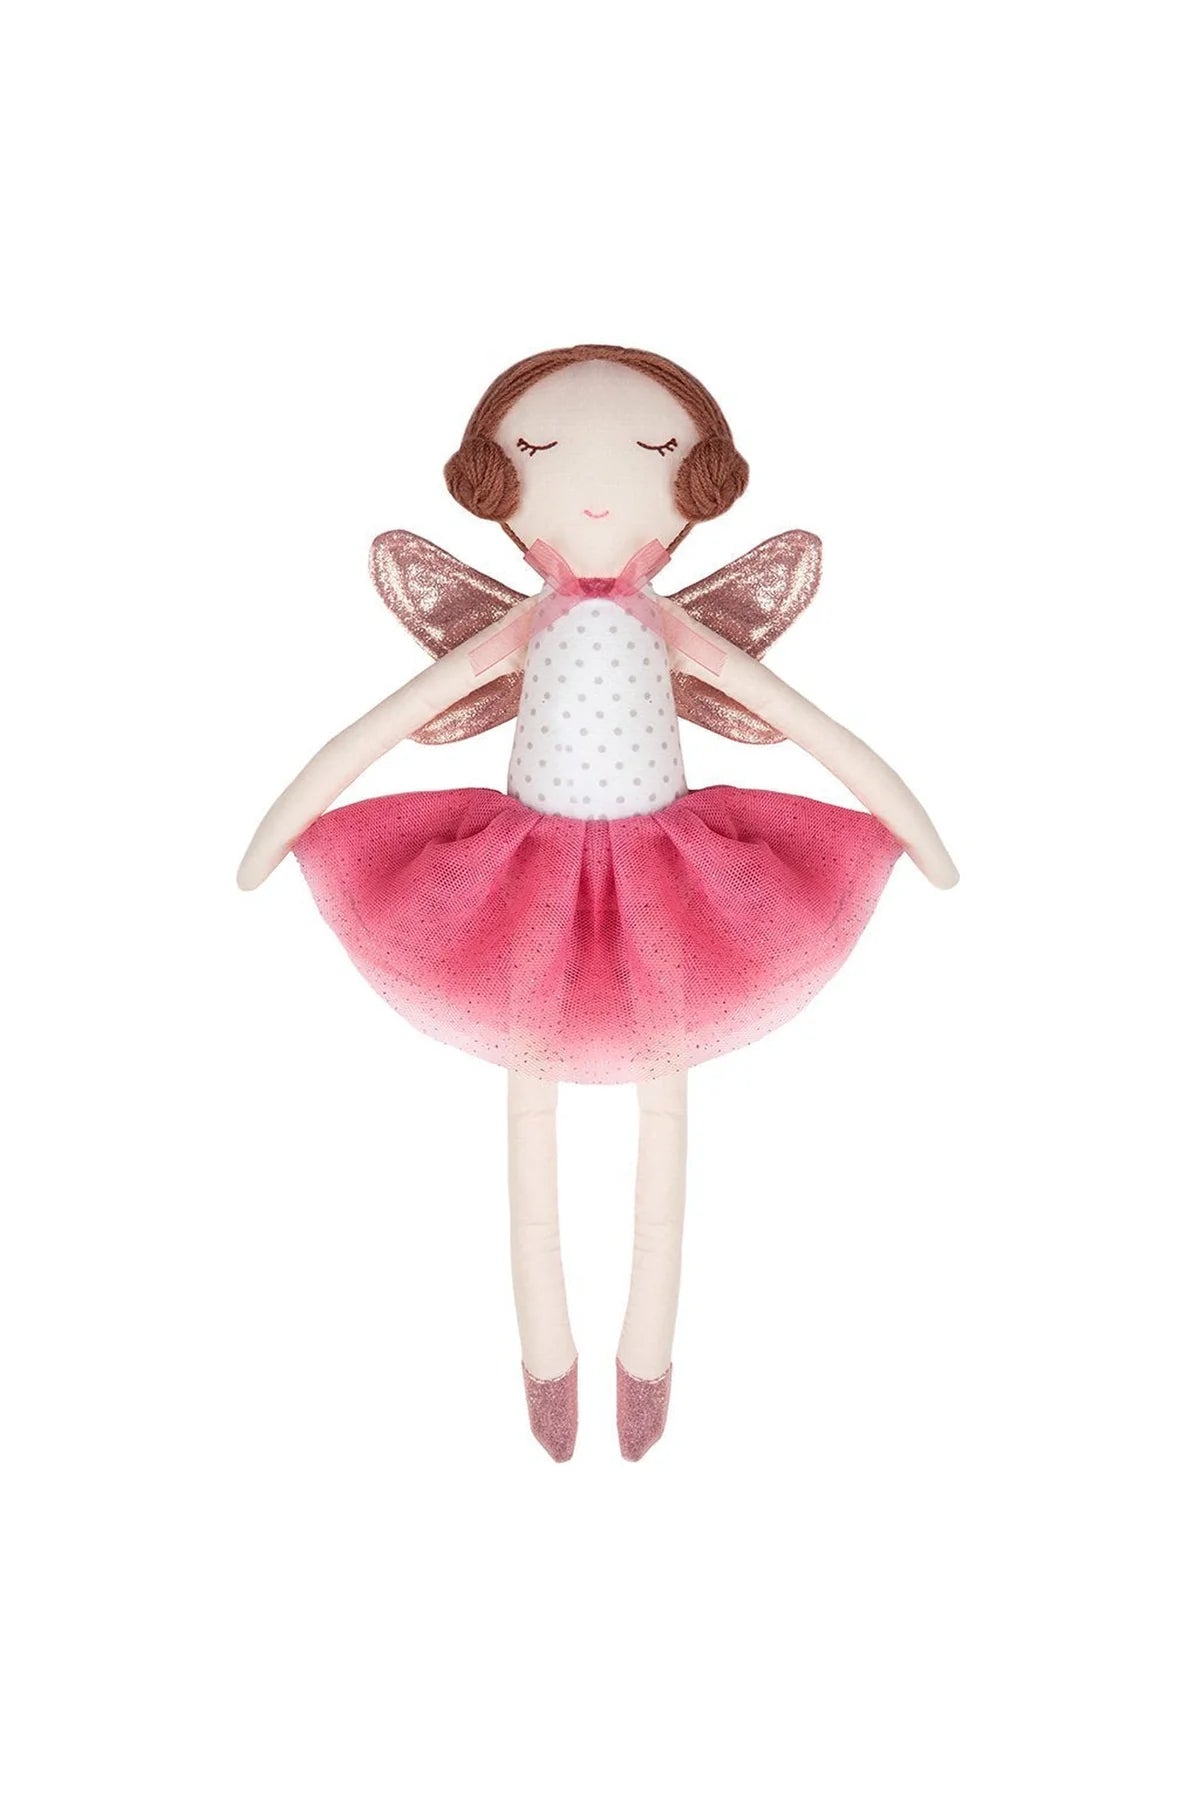 Sara the Fairy Doll 13”